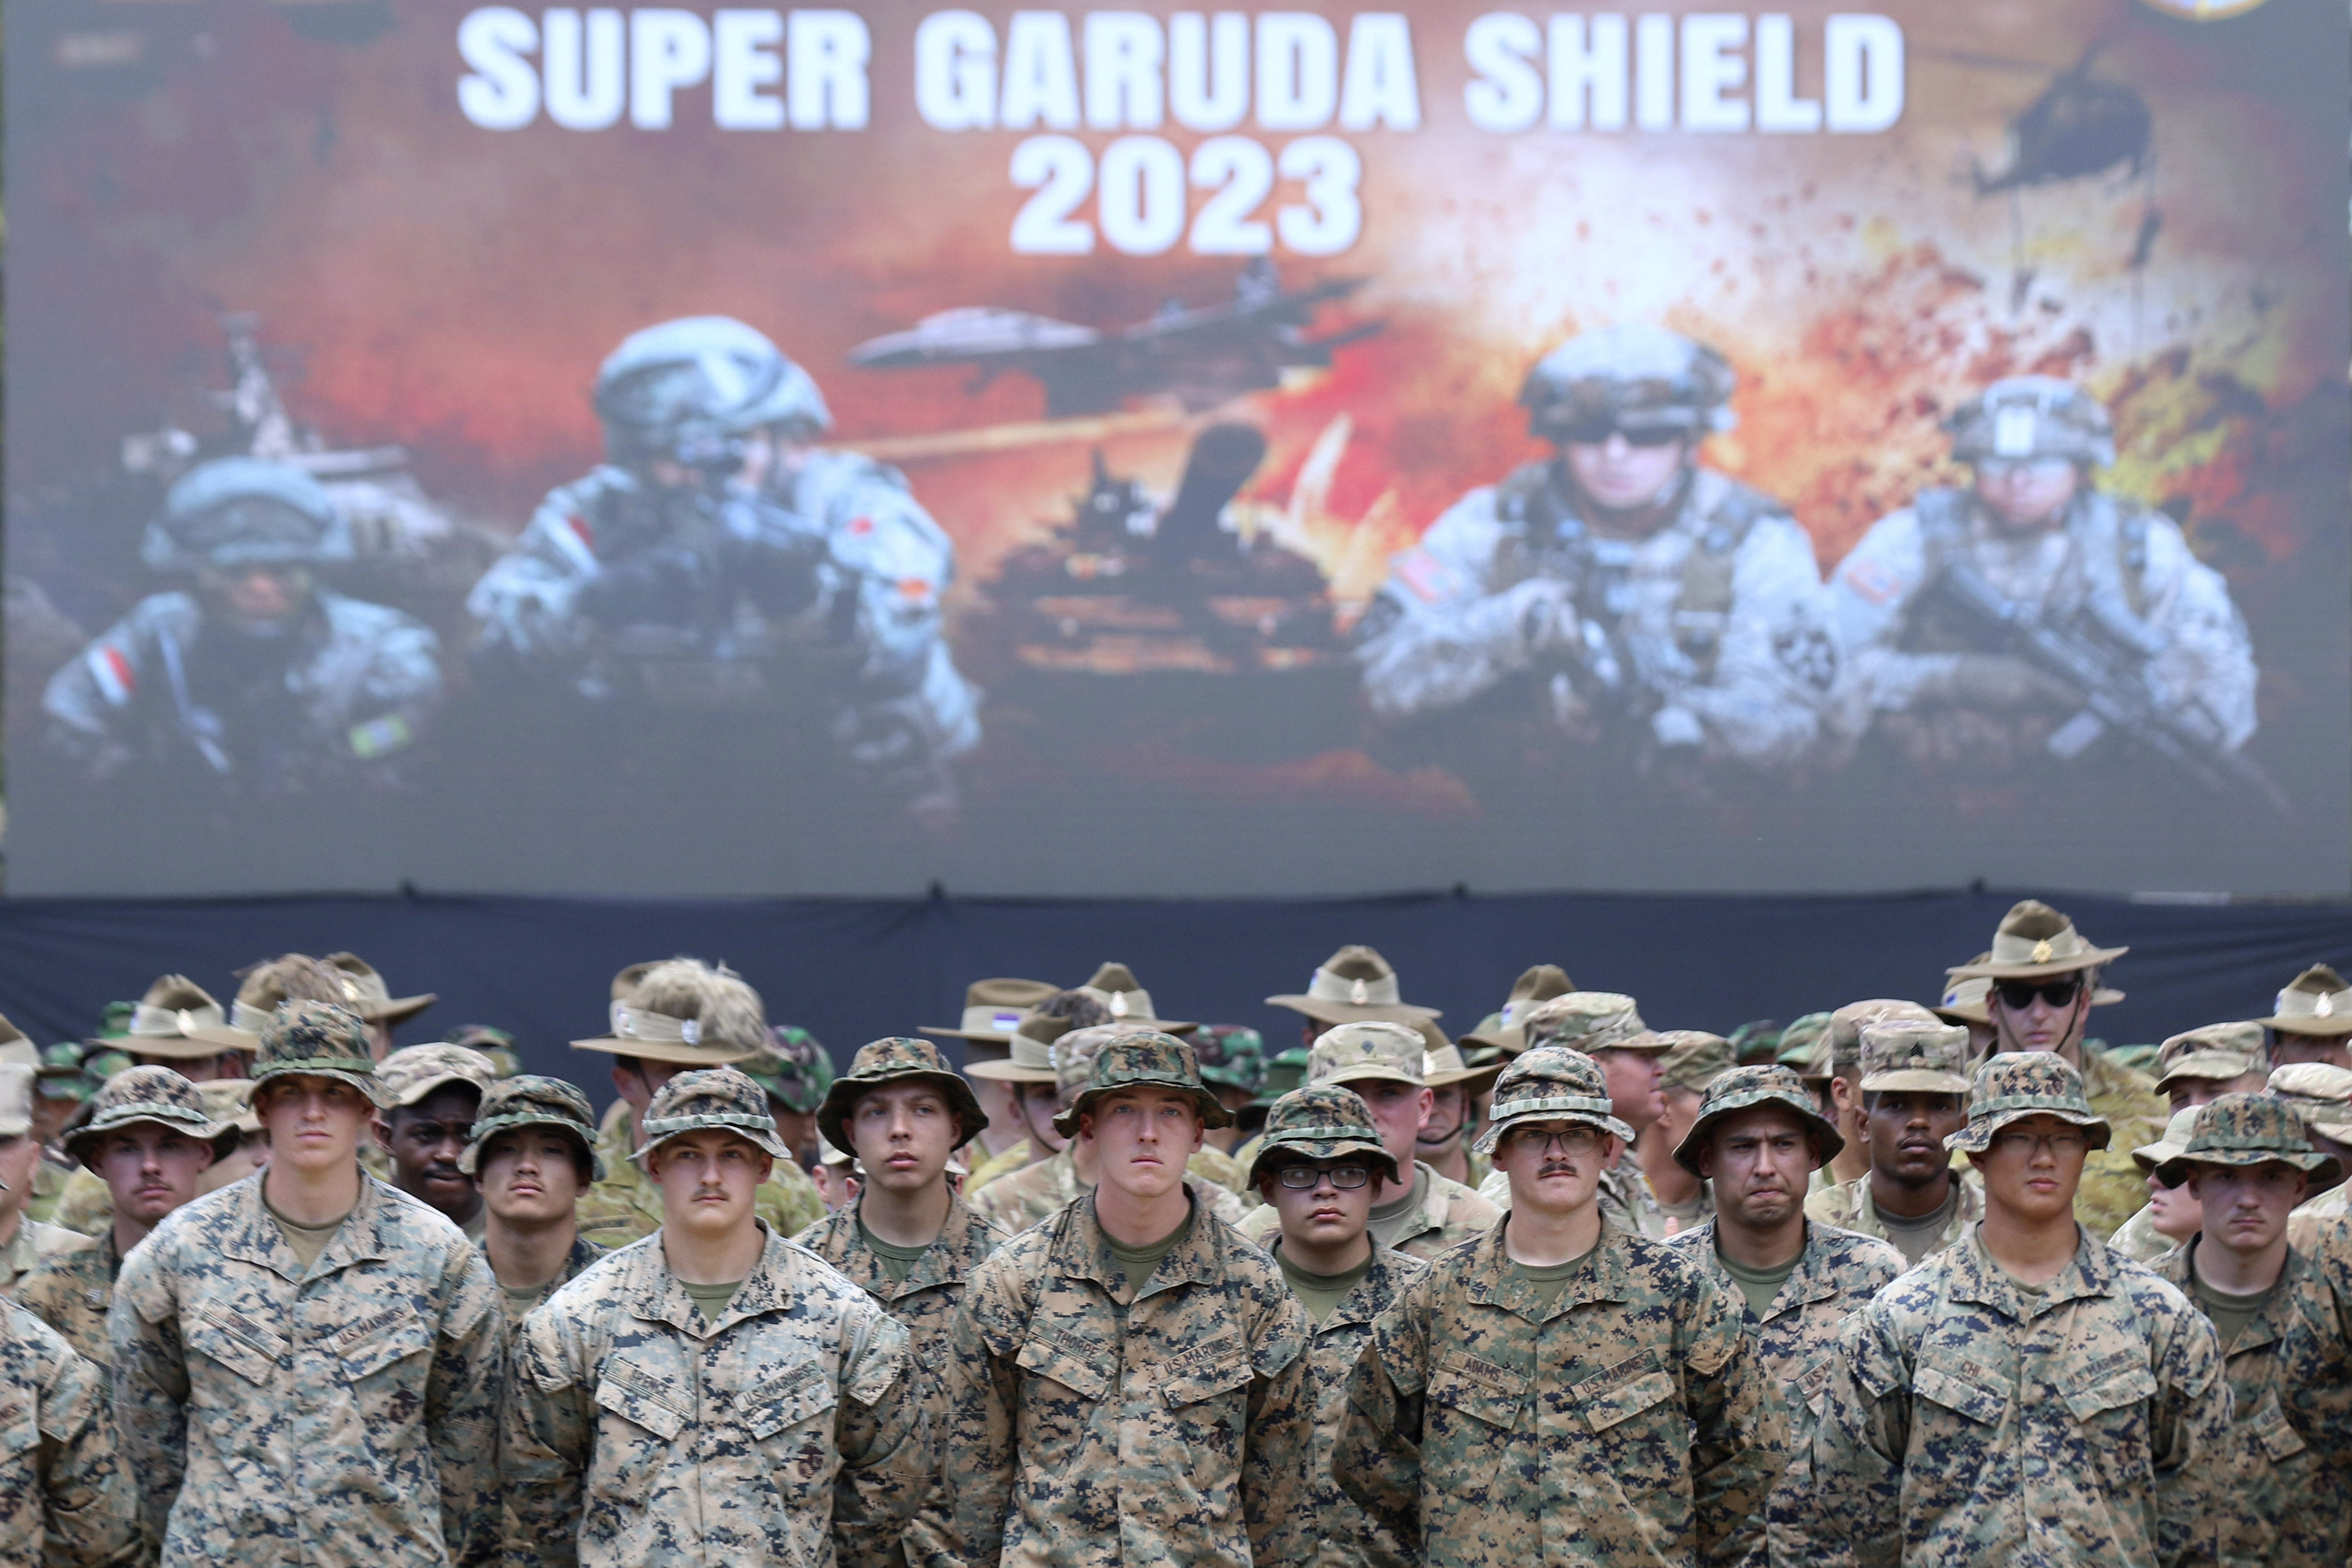 ▲美、澳等盟國在印尼展開「超級嘉魯達之盾」（Super Garuda Shield）軍演。（圖／達志影像／美聯社）